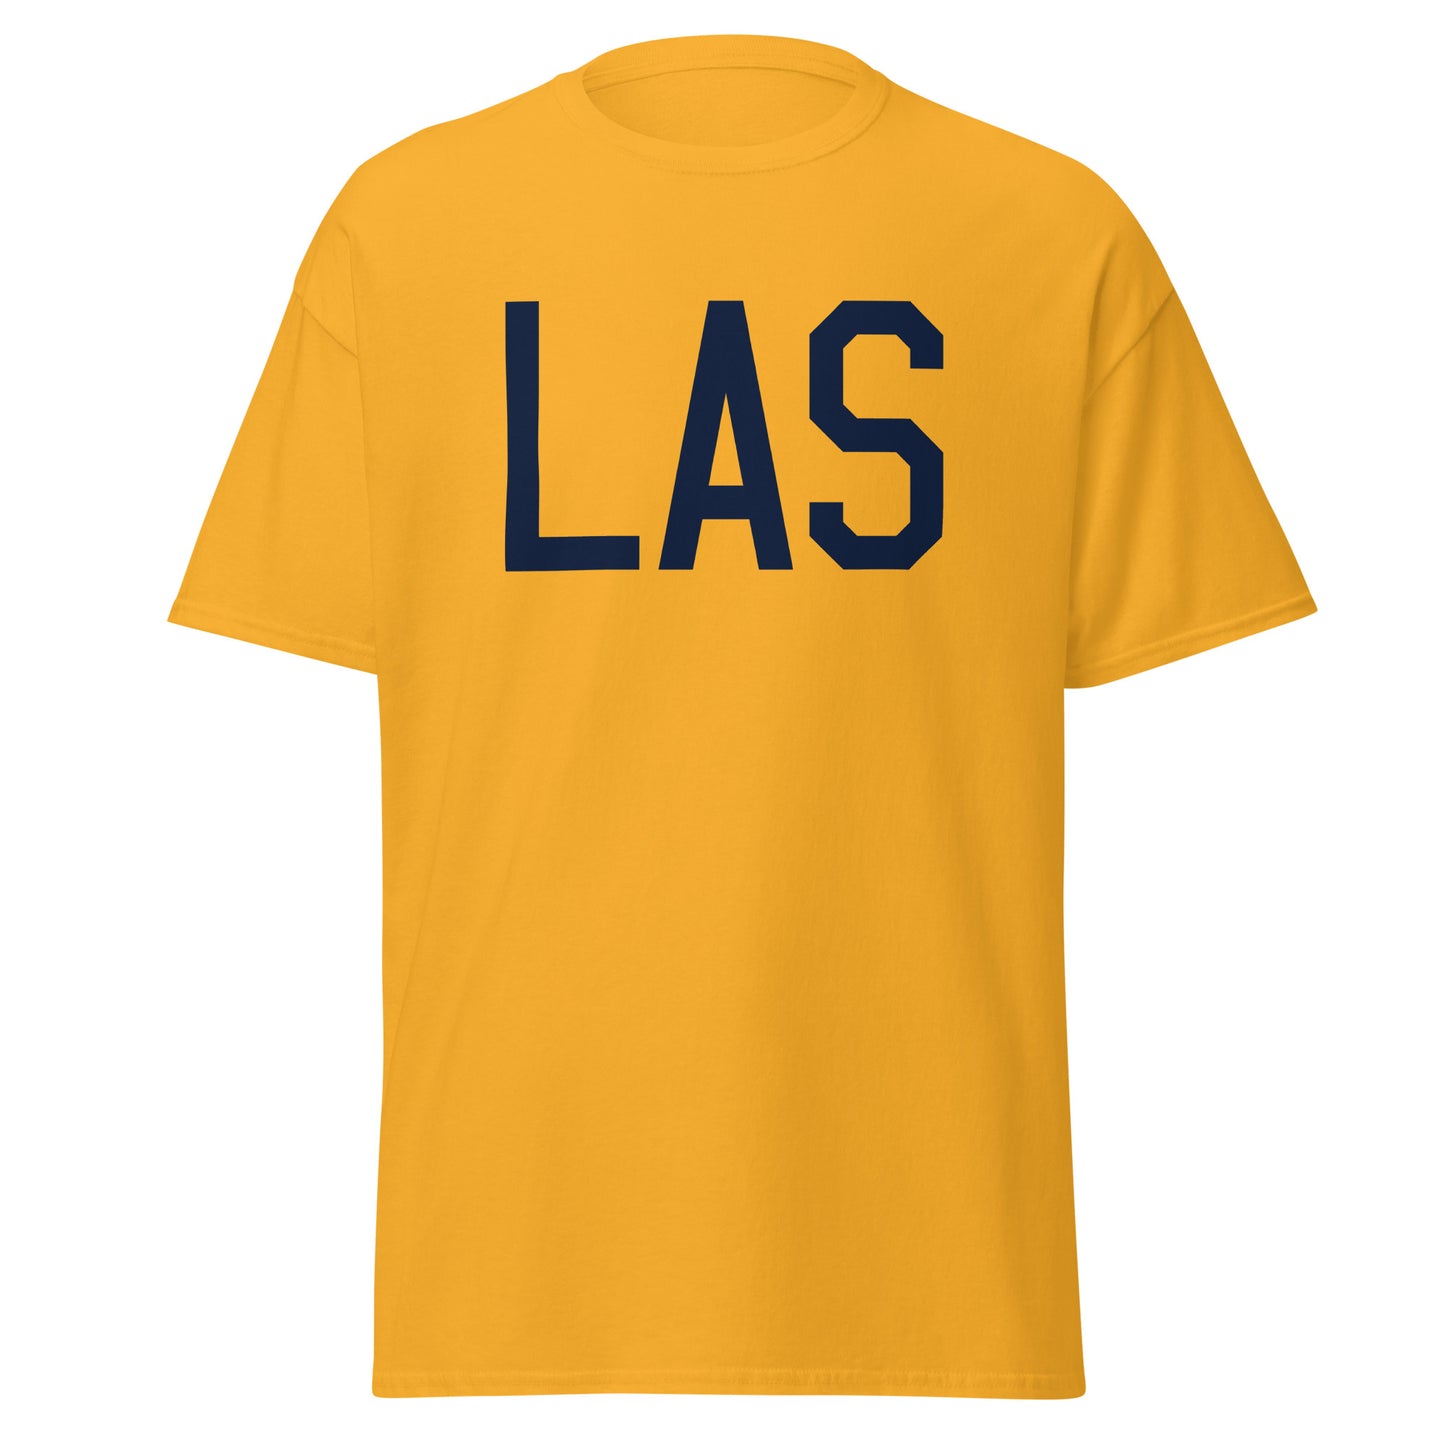 Aviation-Theme Men's T-Shirt - Navy Blue Graphic • LAS Las Vegas • YHM Designs - Image 05